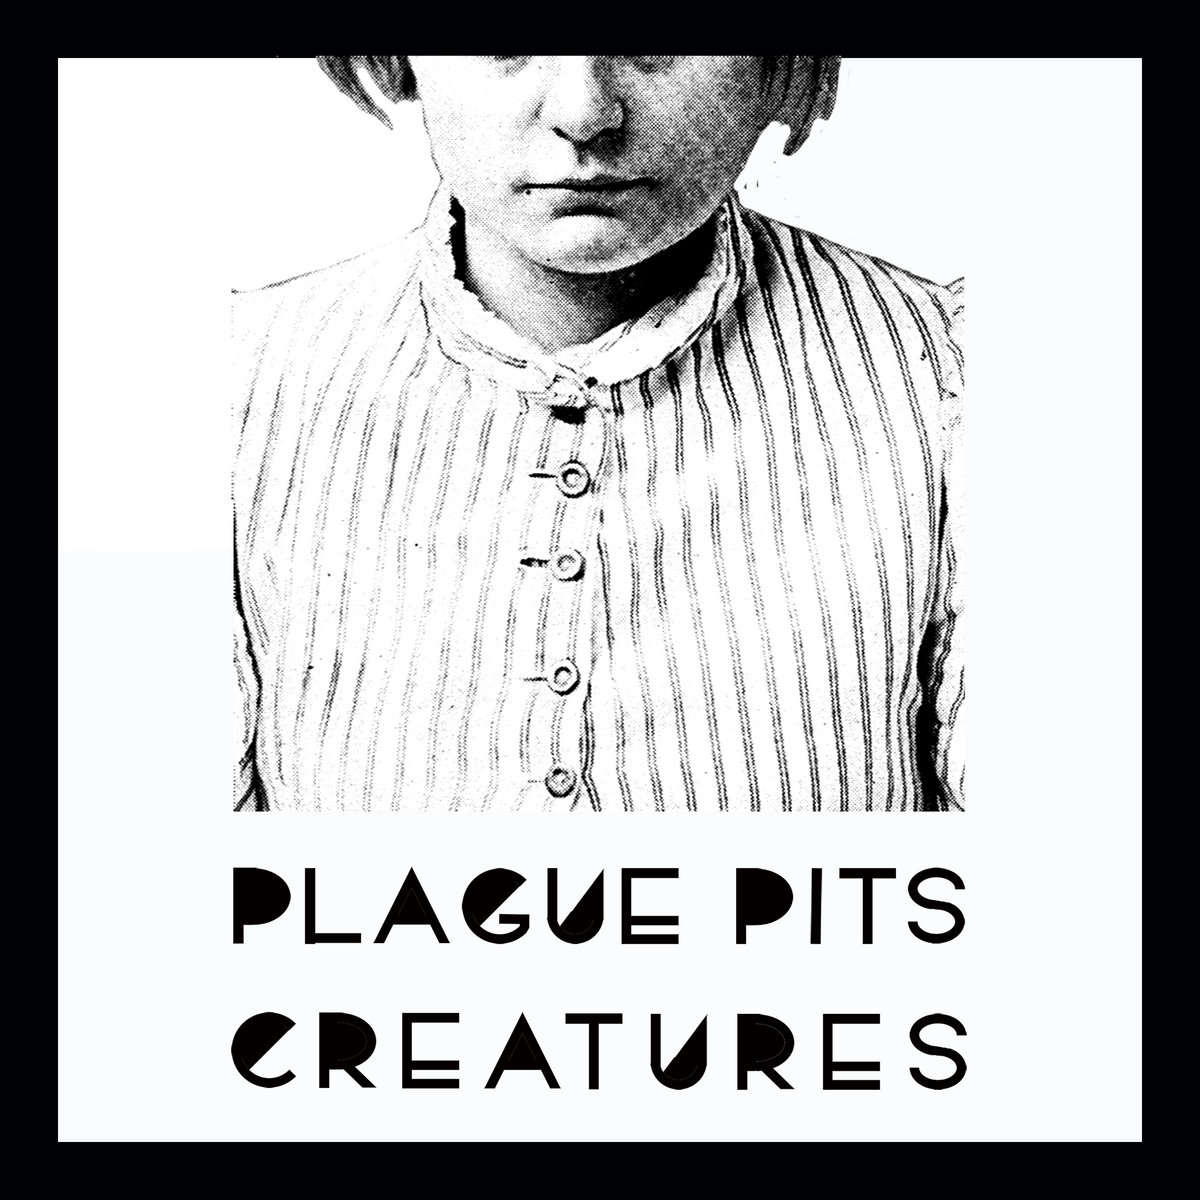 Plague Pits, “Creatures”